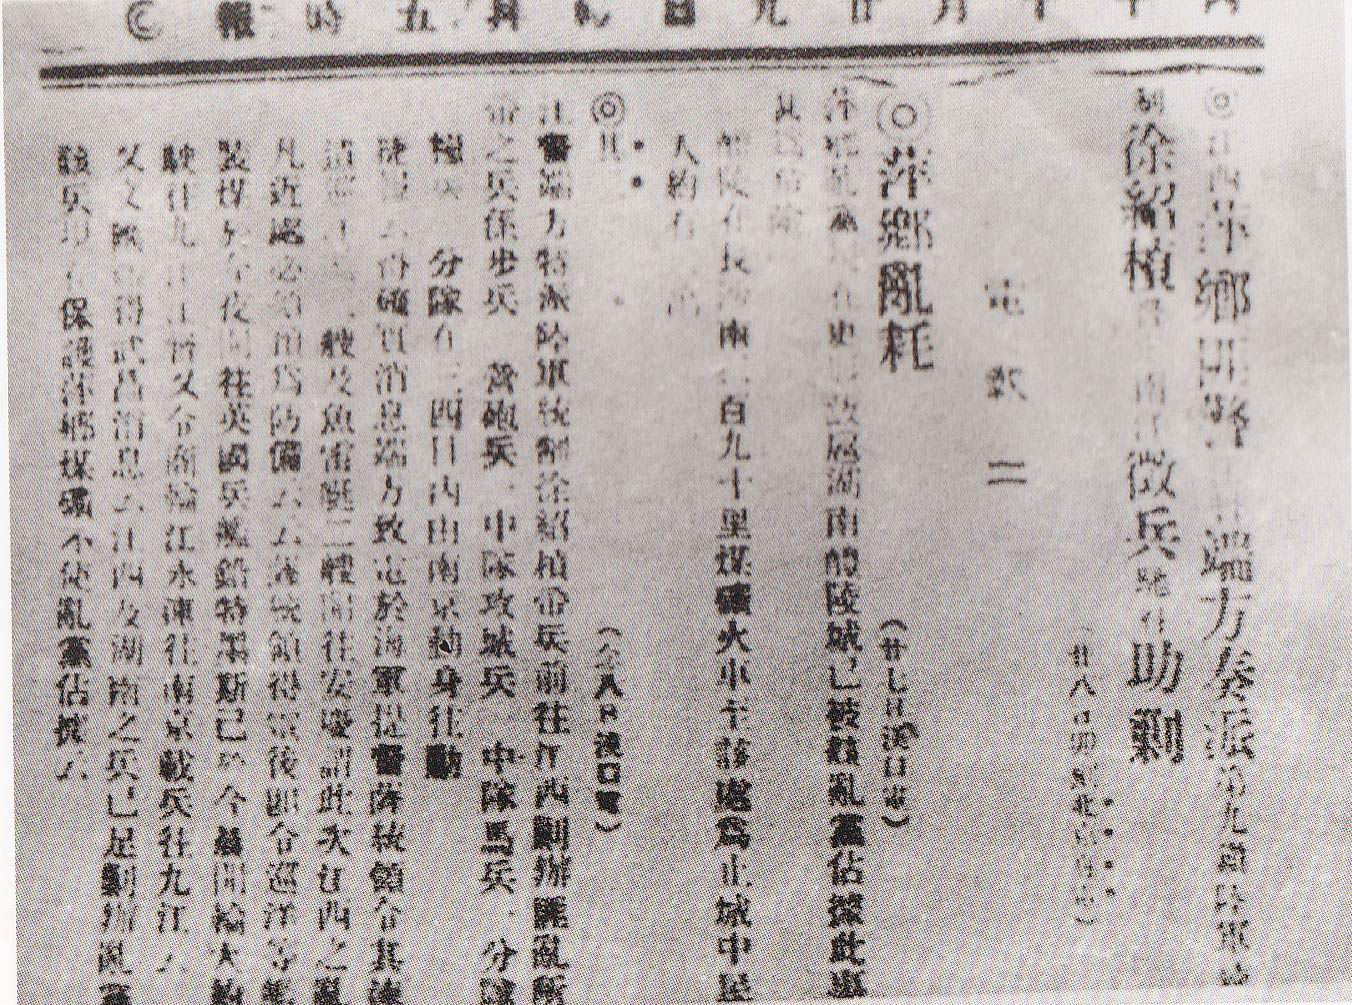 《時報關於萍瀏醴起義的報導》